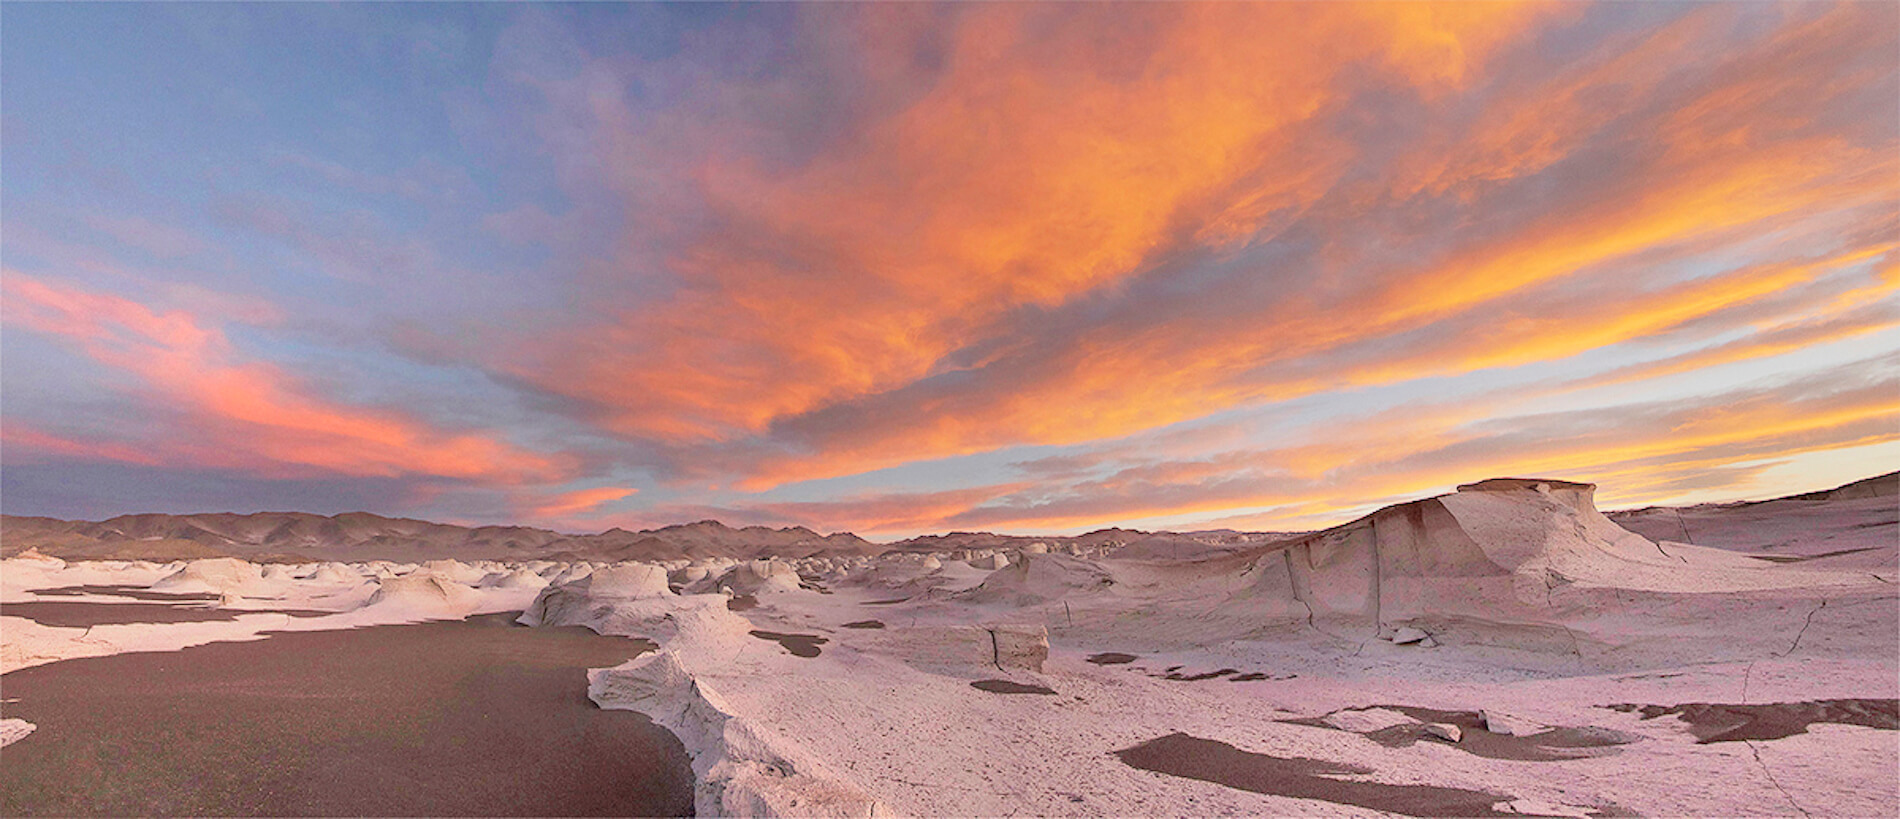 Puna de Atacama tour, Catamarca, Argentina